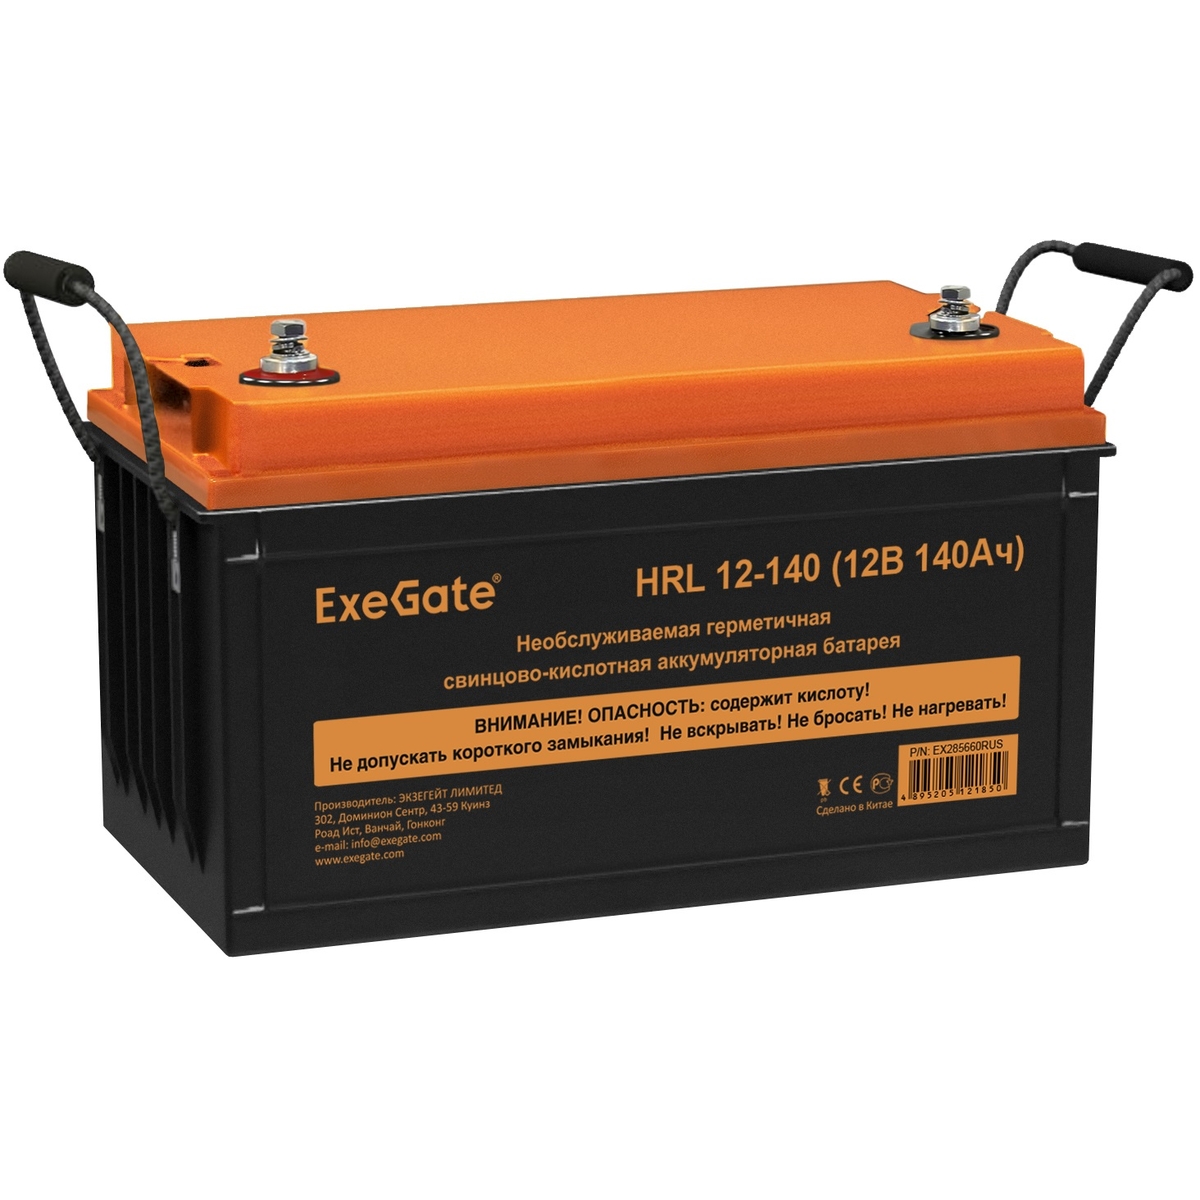 Battery ExeGate HRL 12-140